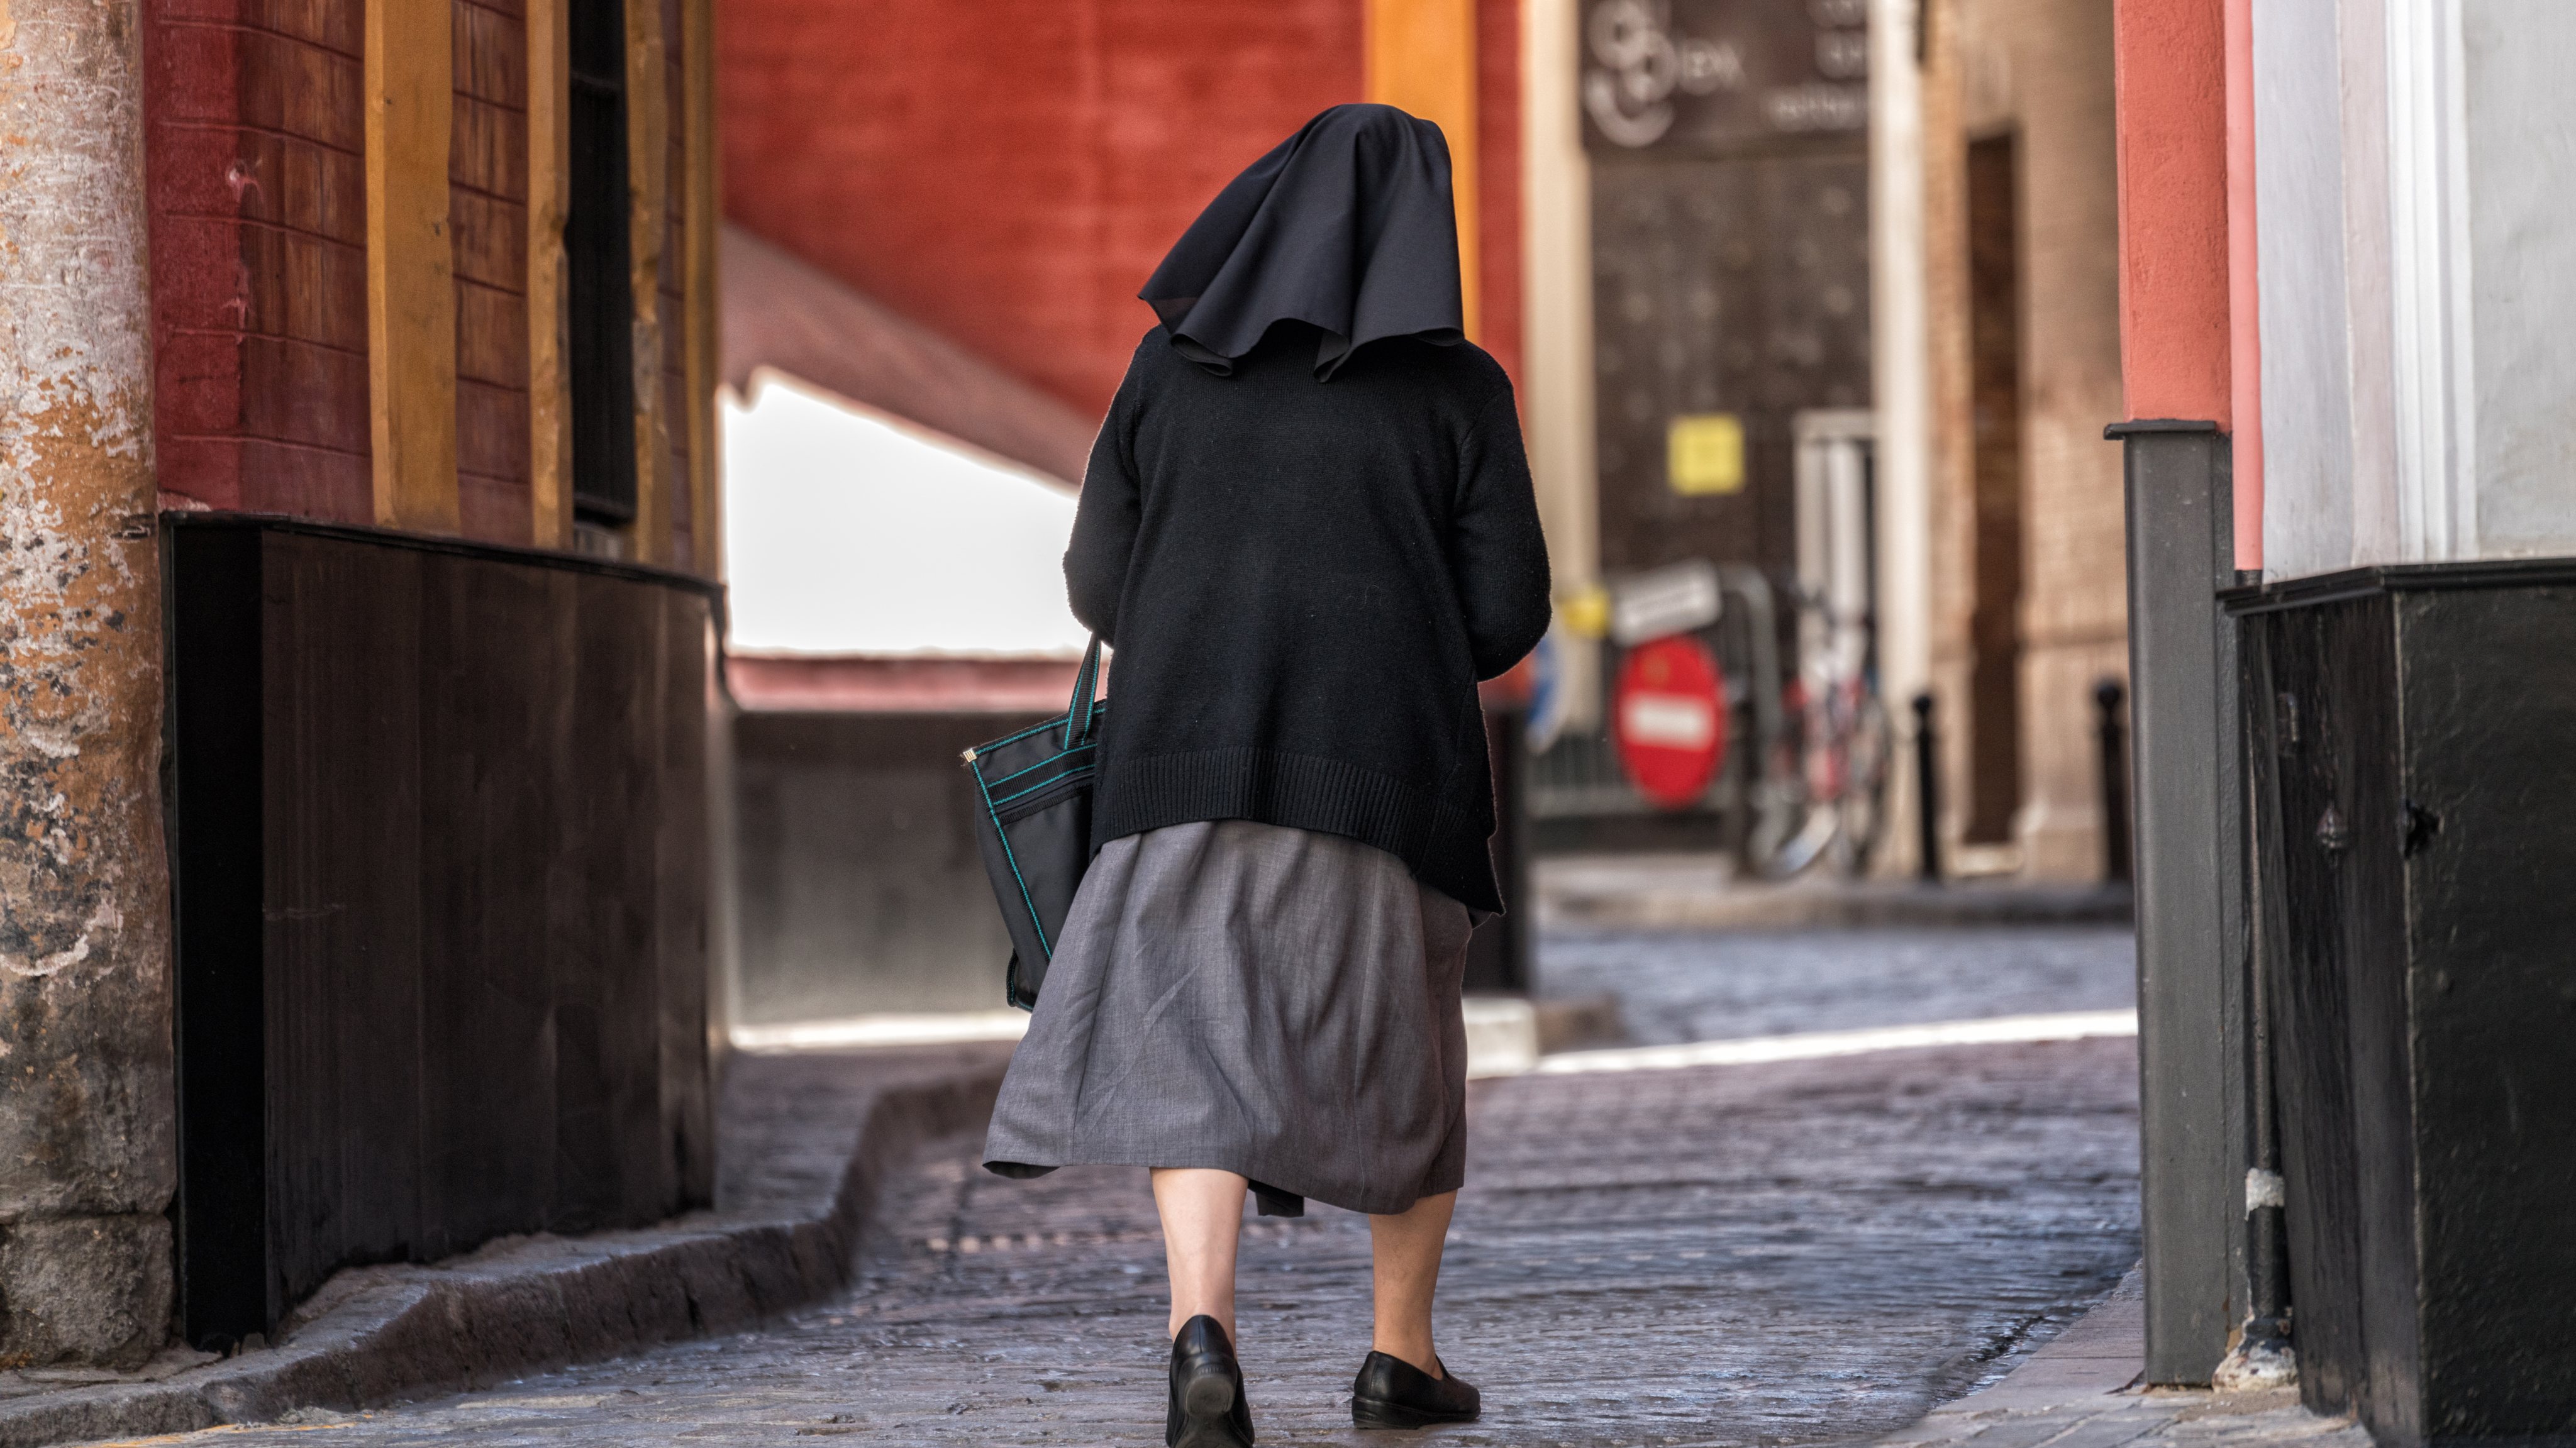 Rear View Of Nun Walking On City Street